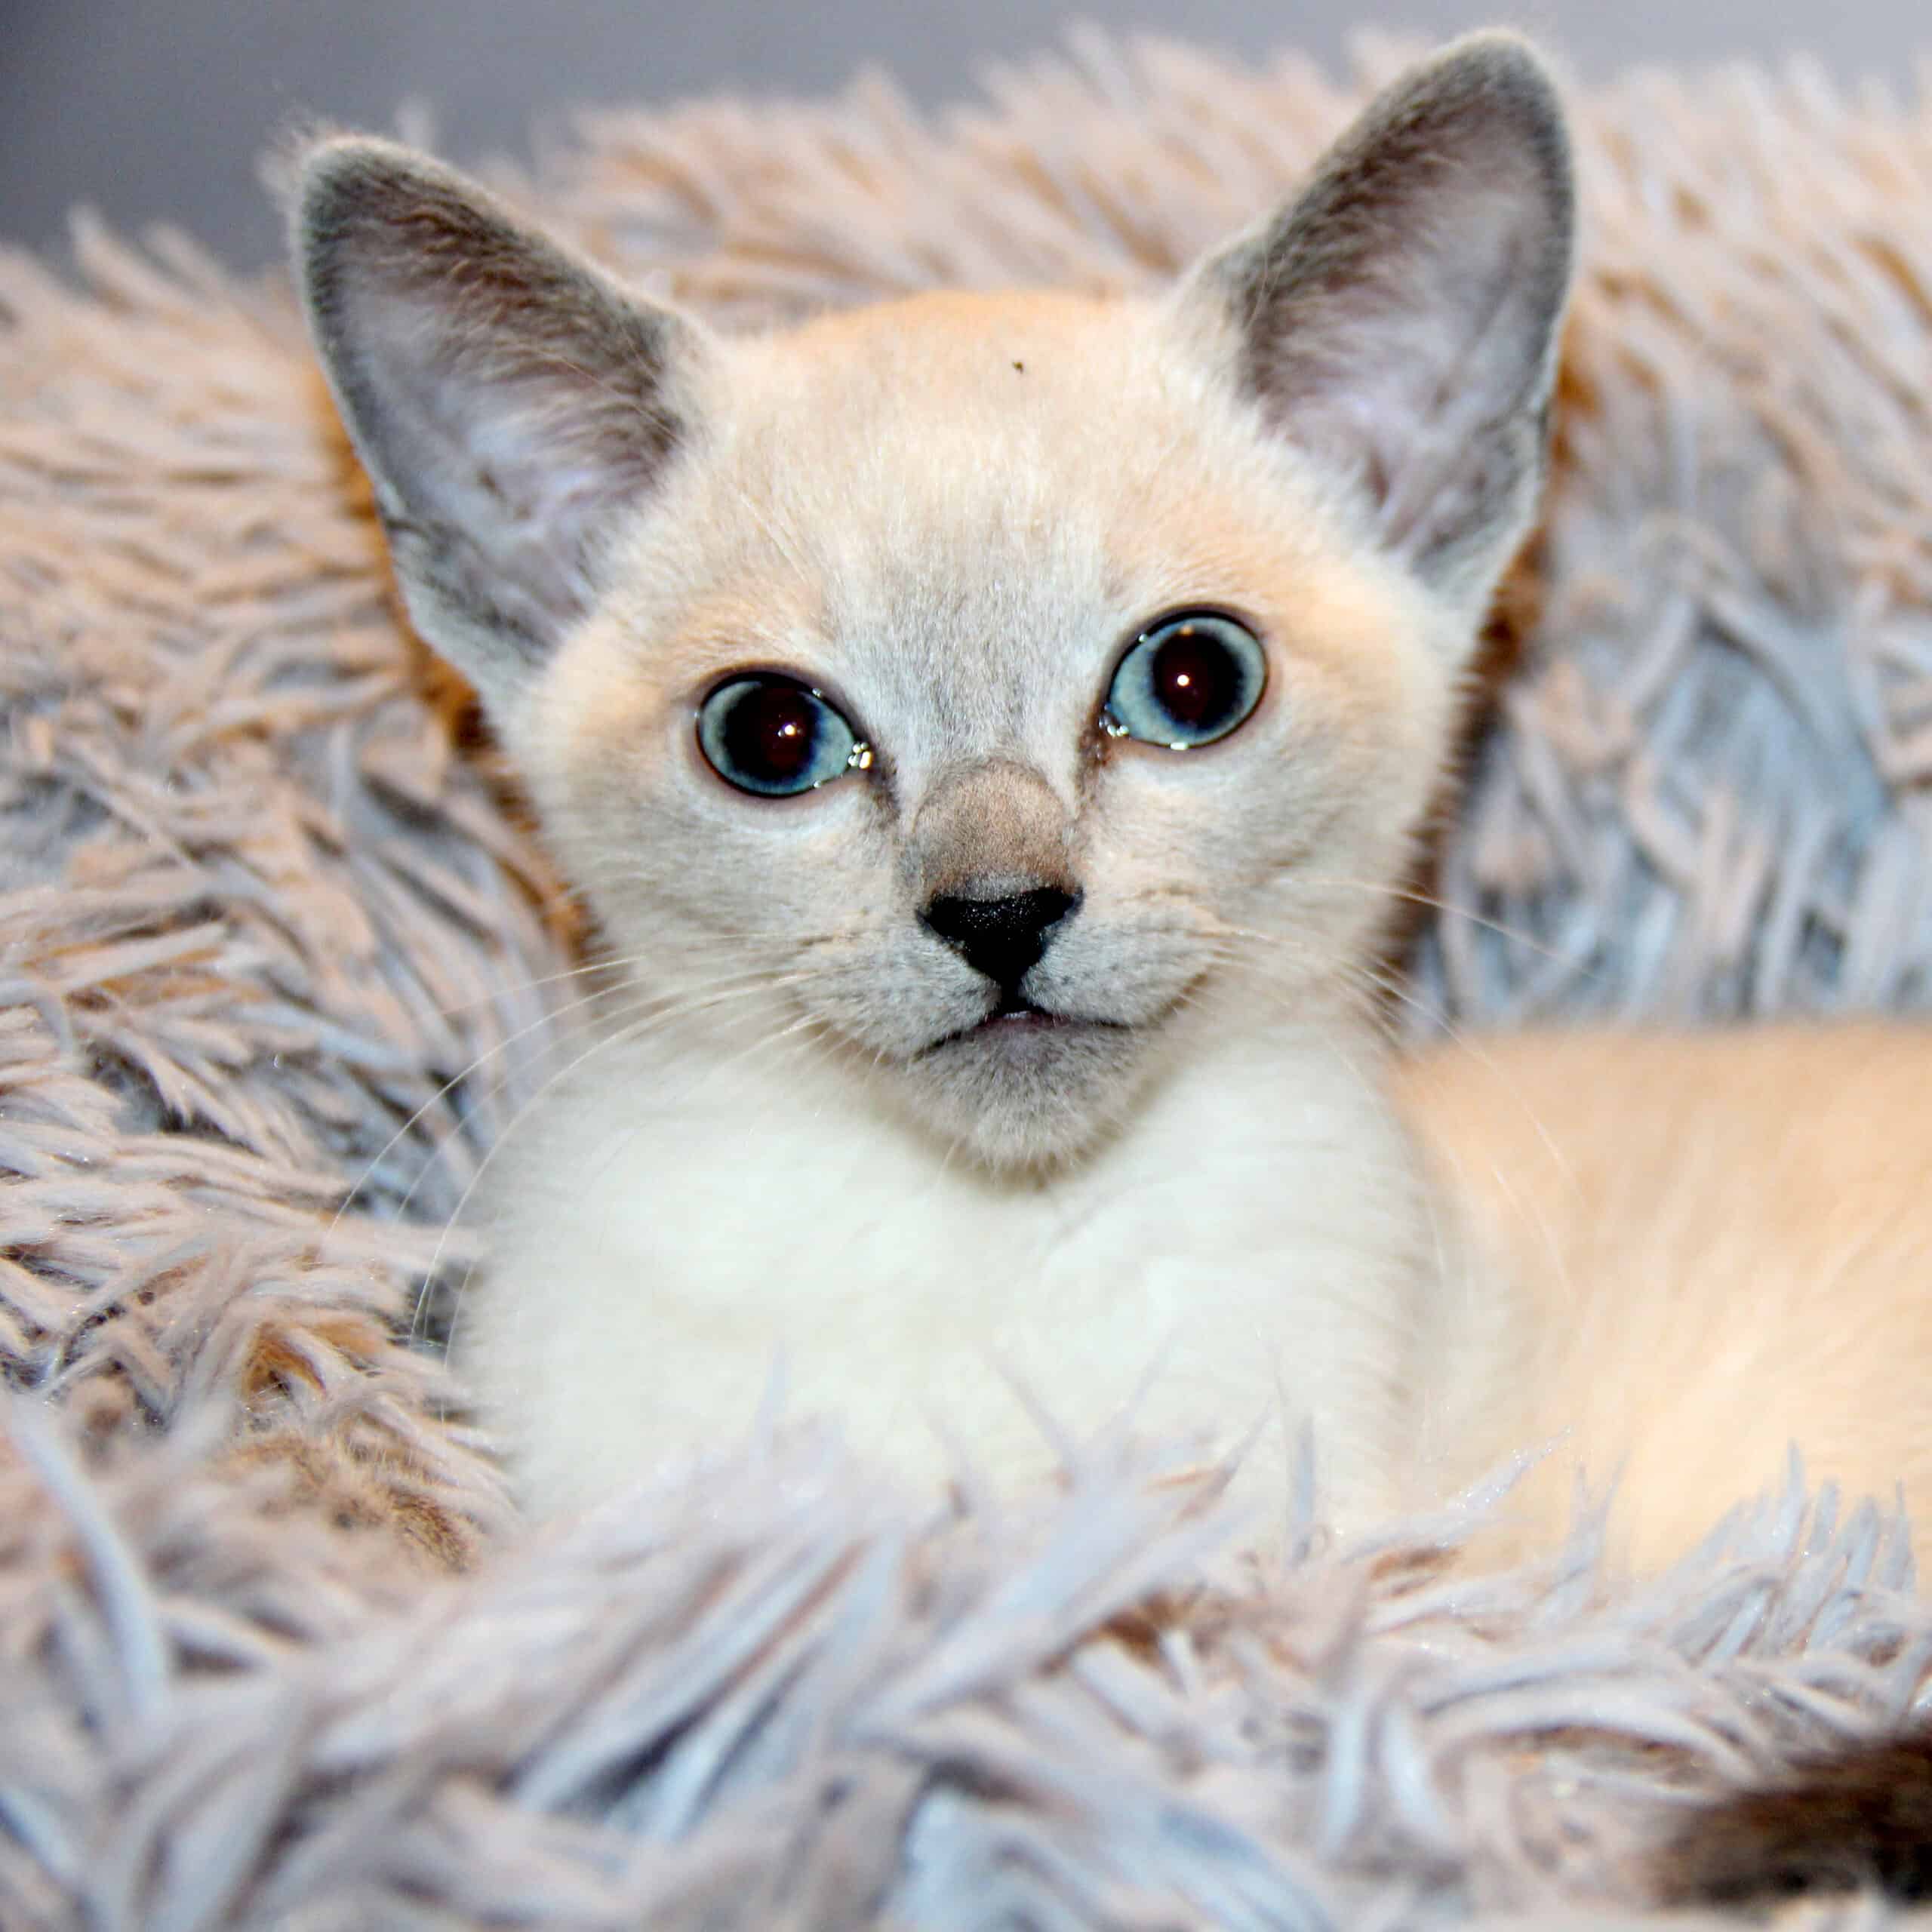 En blåmaskad, colorpoint, (vit) Russian Blue kattunge med blå ögon. Öronen är svagt grå och pälsen är benvit. Kattungen igger på ett rosa fluffigt tyg med långa trådar och man ser bara överkroppen och huvudet.